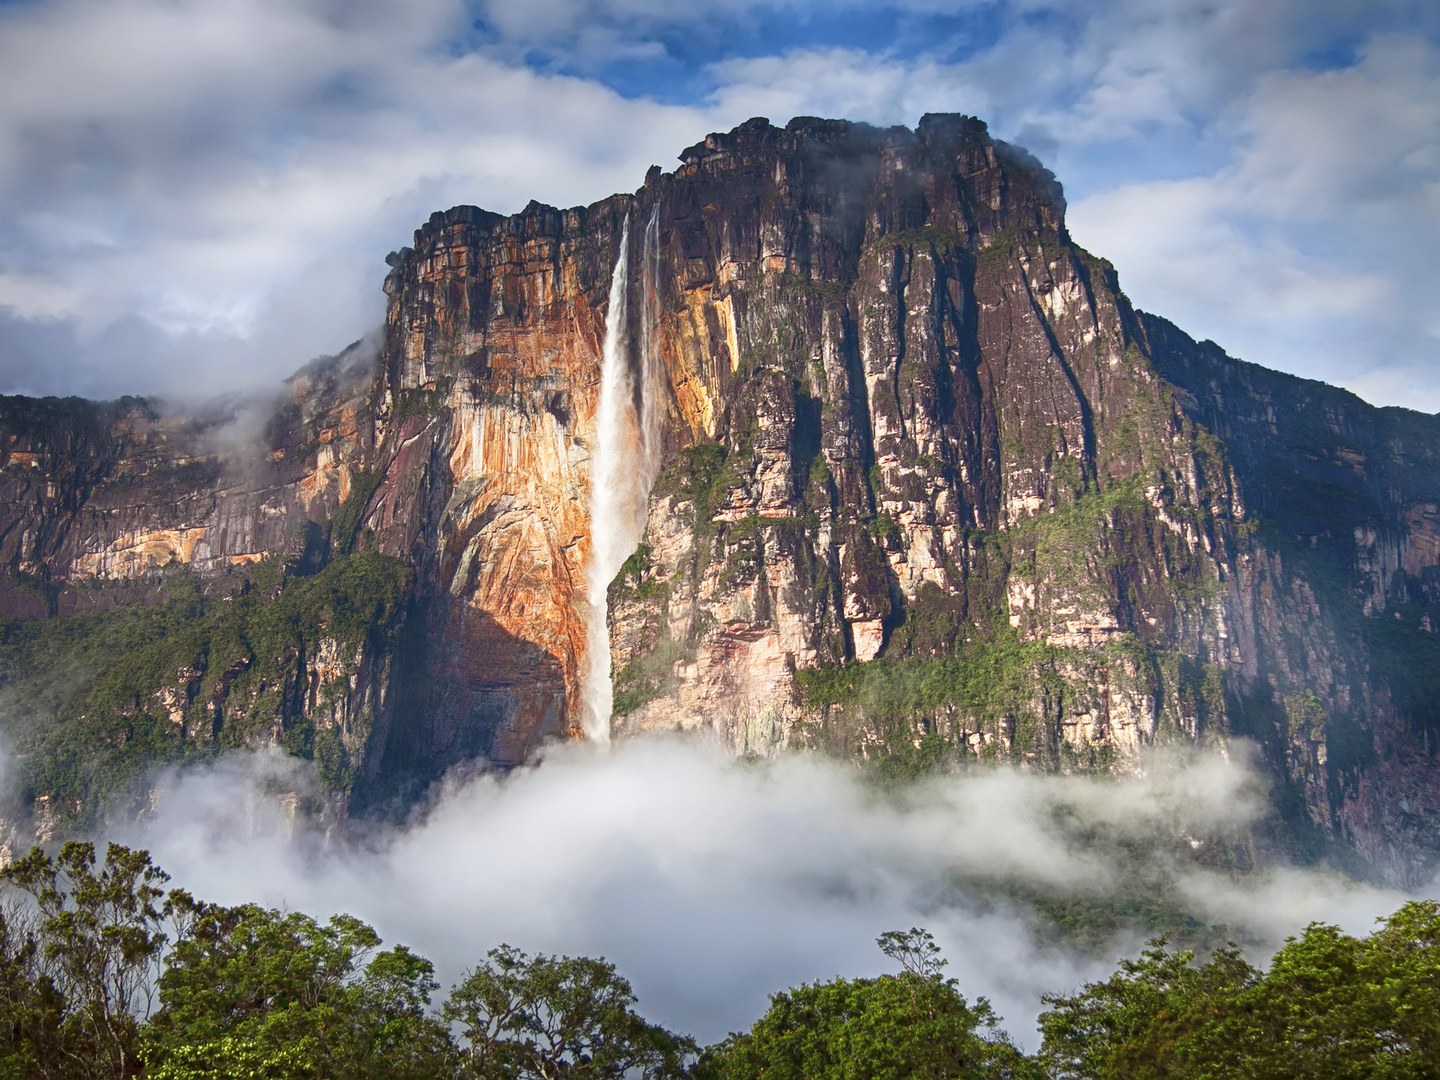 Angel được phát hiện bởi một phi công người Mỹ năm 1993 và nó trở thành thác nước cao nhất thế giới, tọa lạc ở Venezuela. 